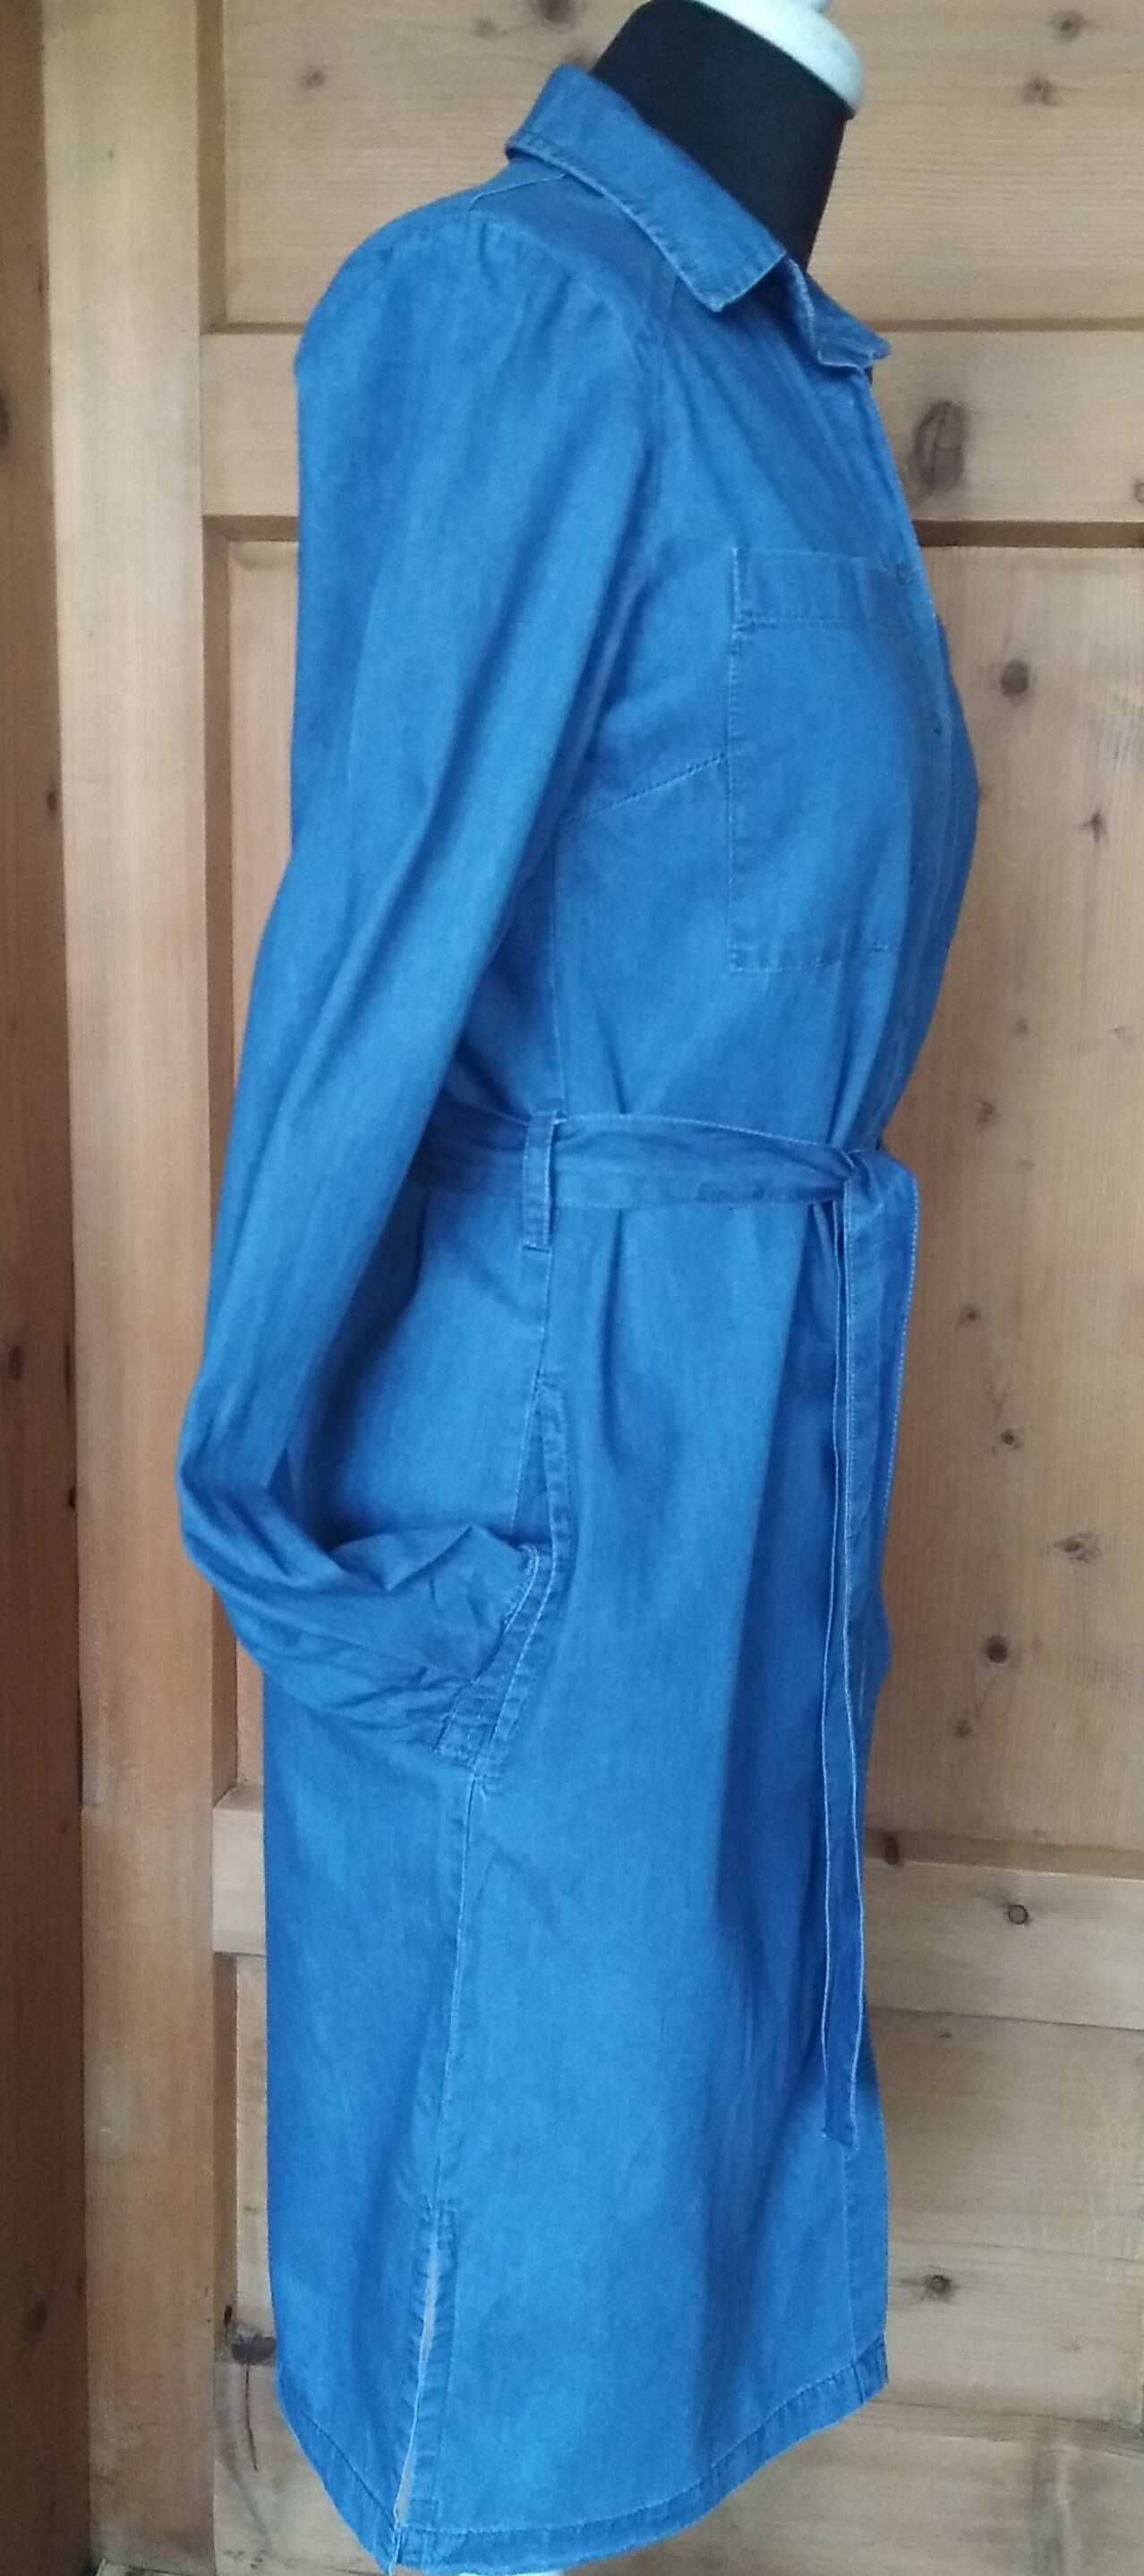 RESERVED cienka sukienka jeans boho PASEK kieszenie r.34  XS